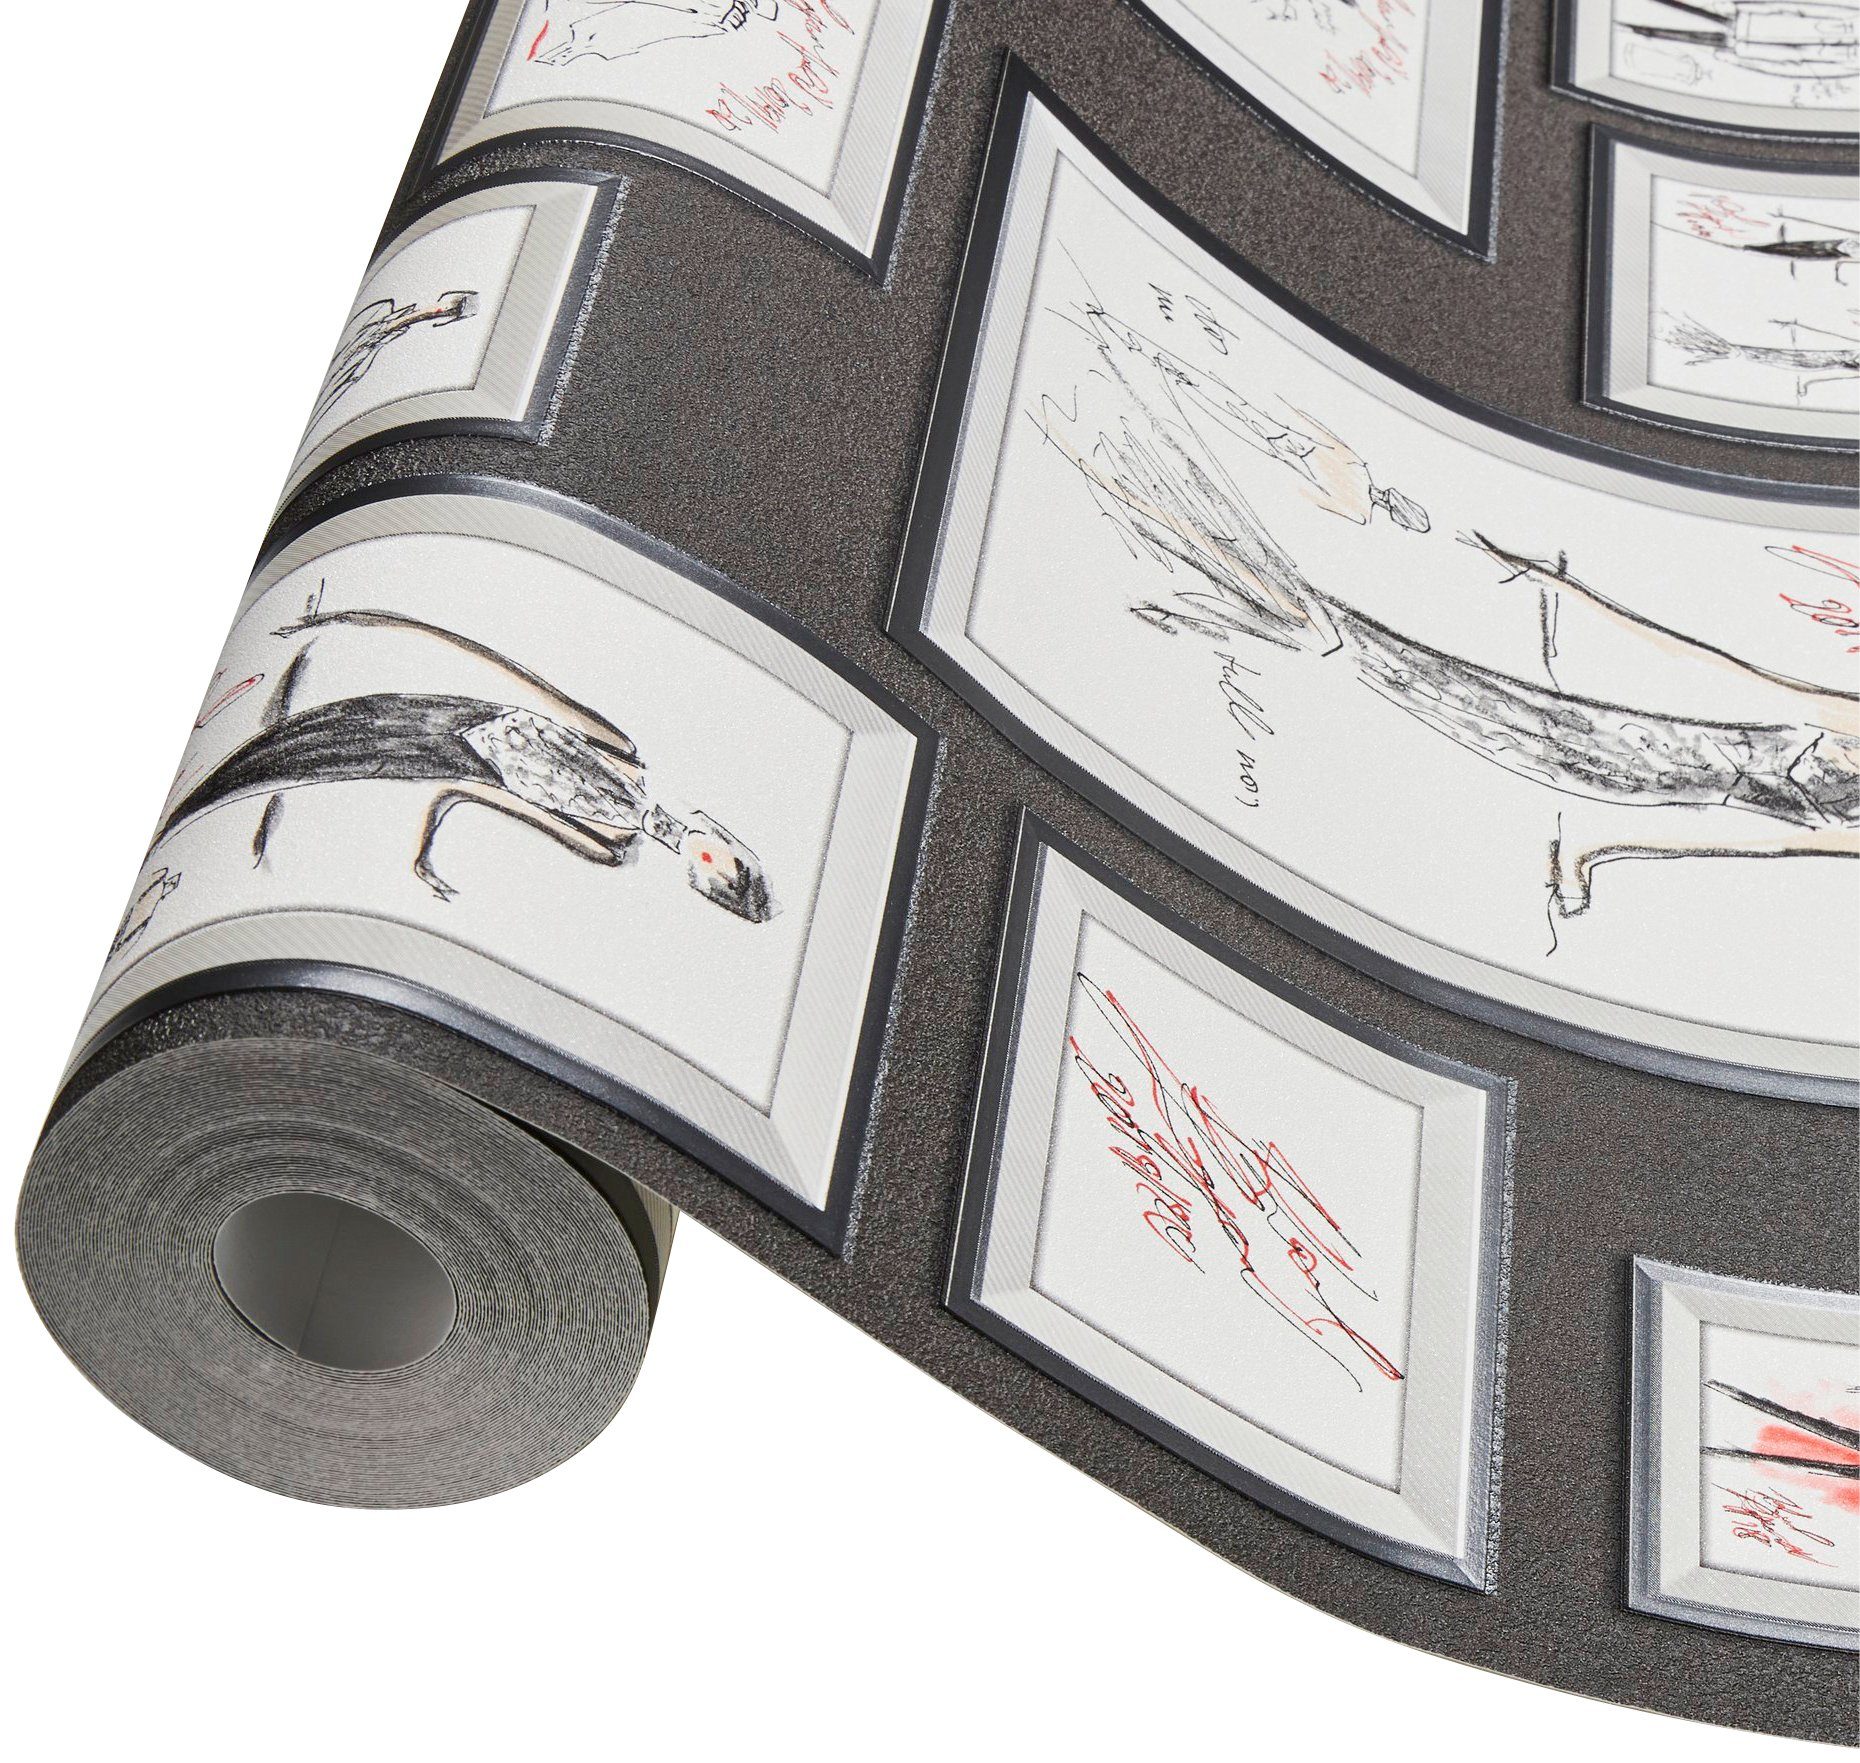 Architects Sketch, Vliestapete Tapete Designer grau/weiß/rot Bilderrahmen Tapete Paper